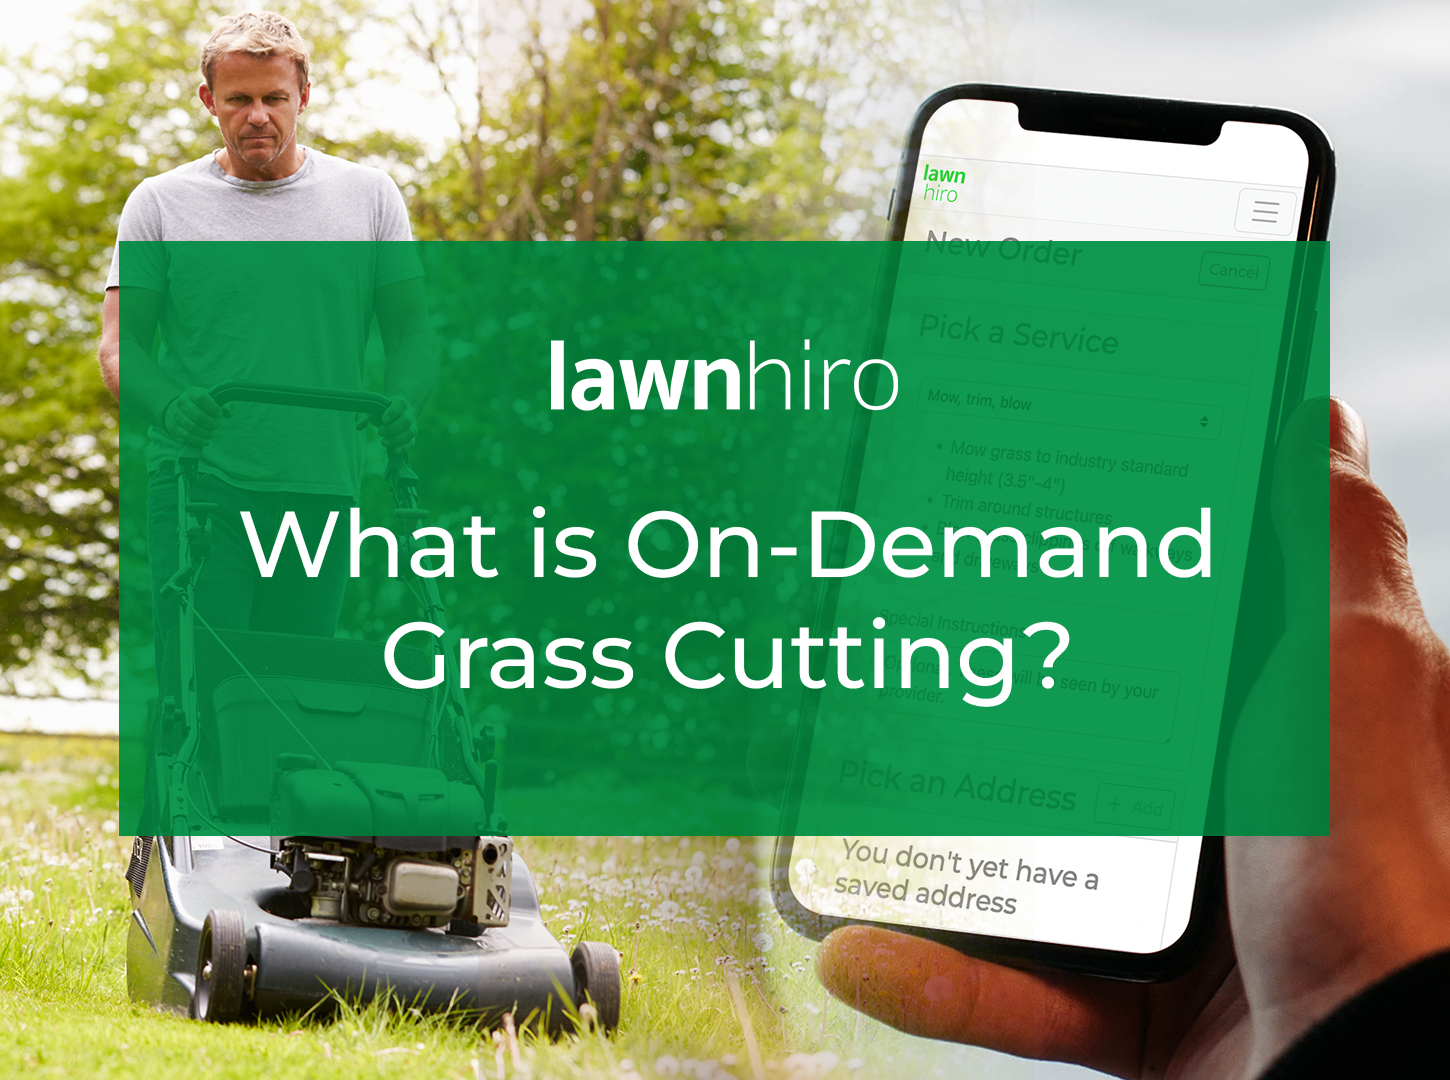 On-Demand Grass Cutting - Lawnhiro